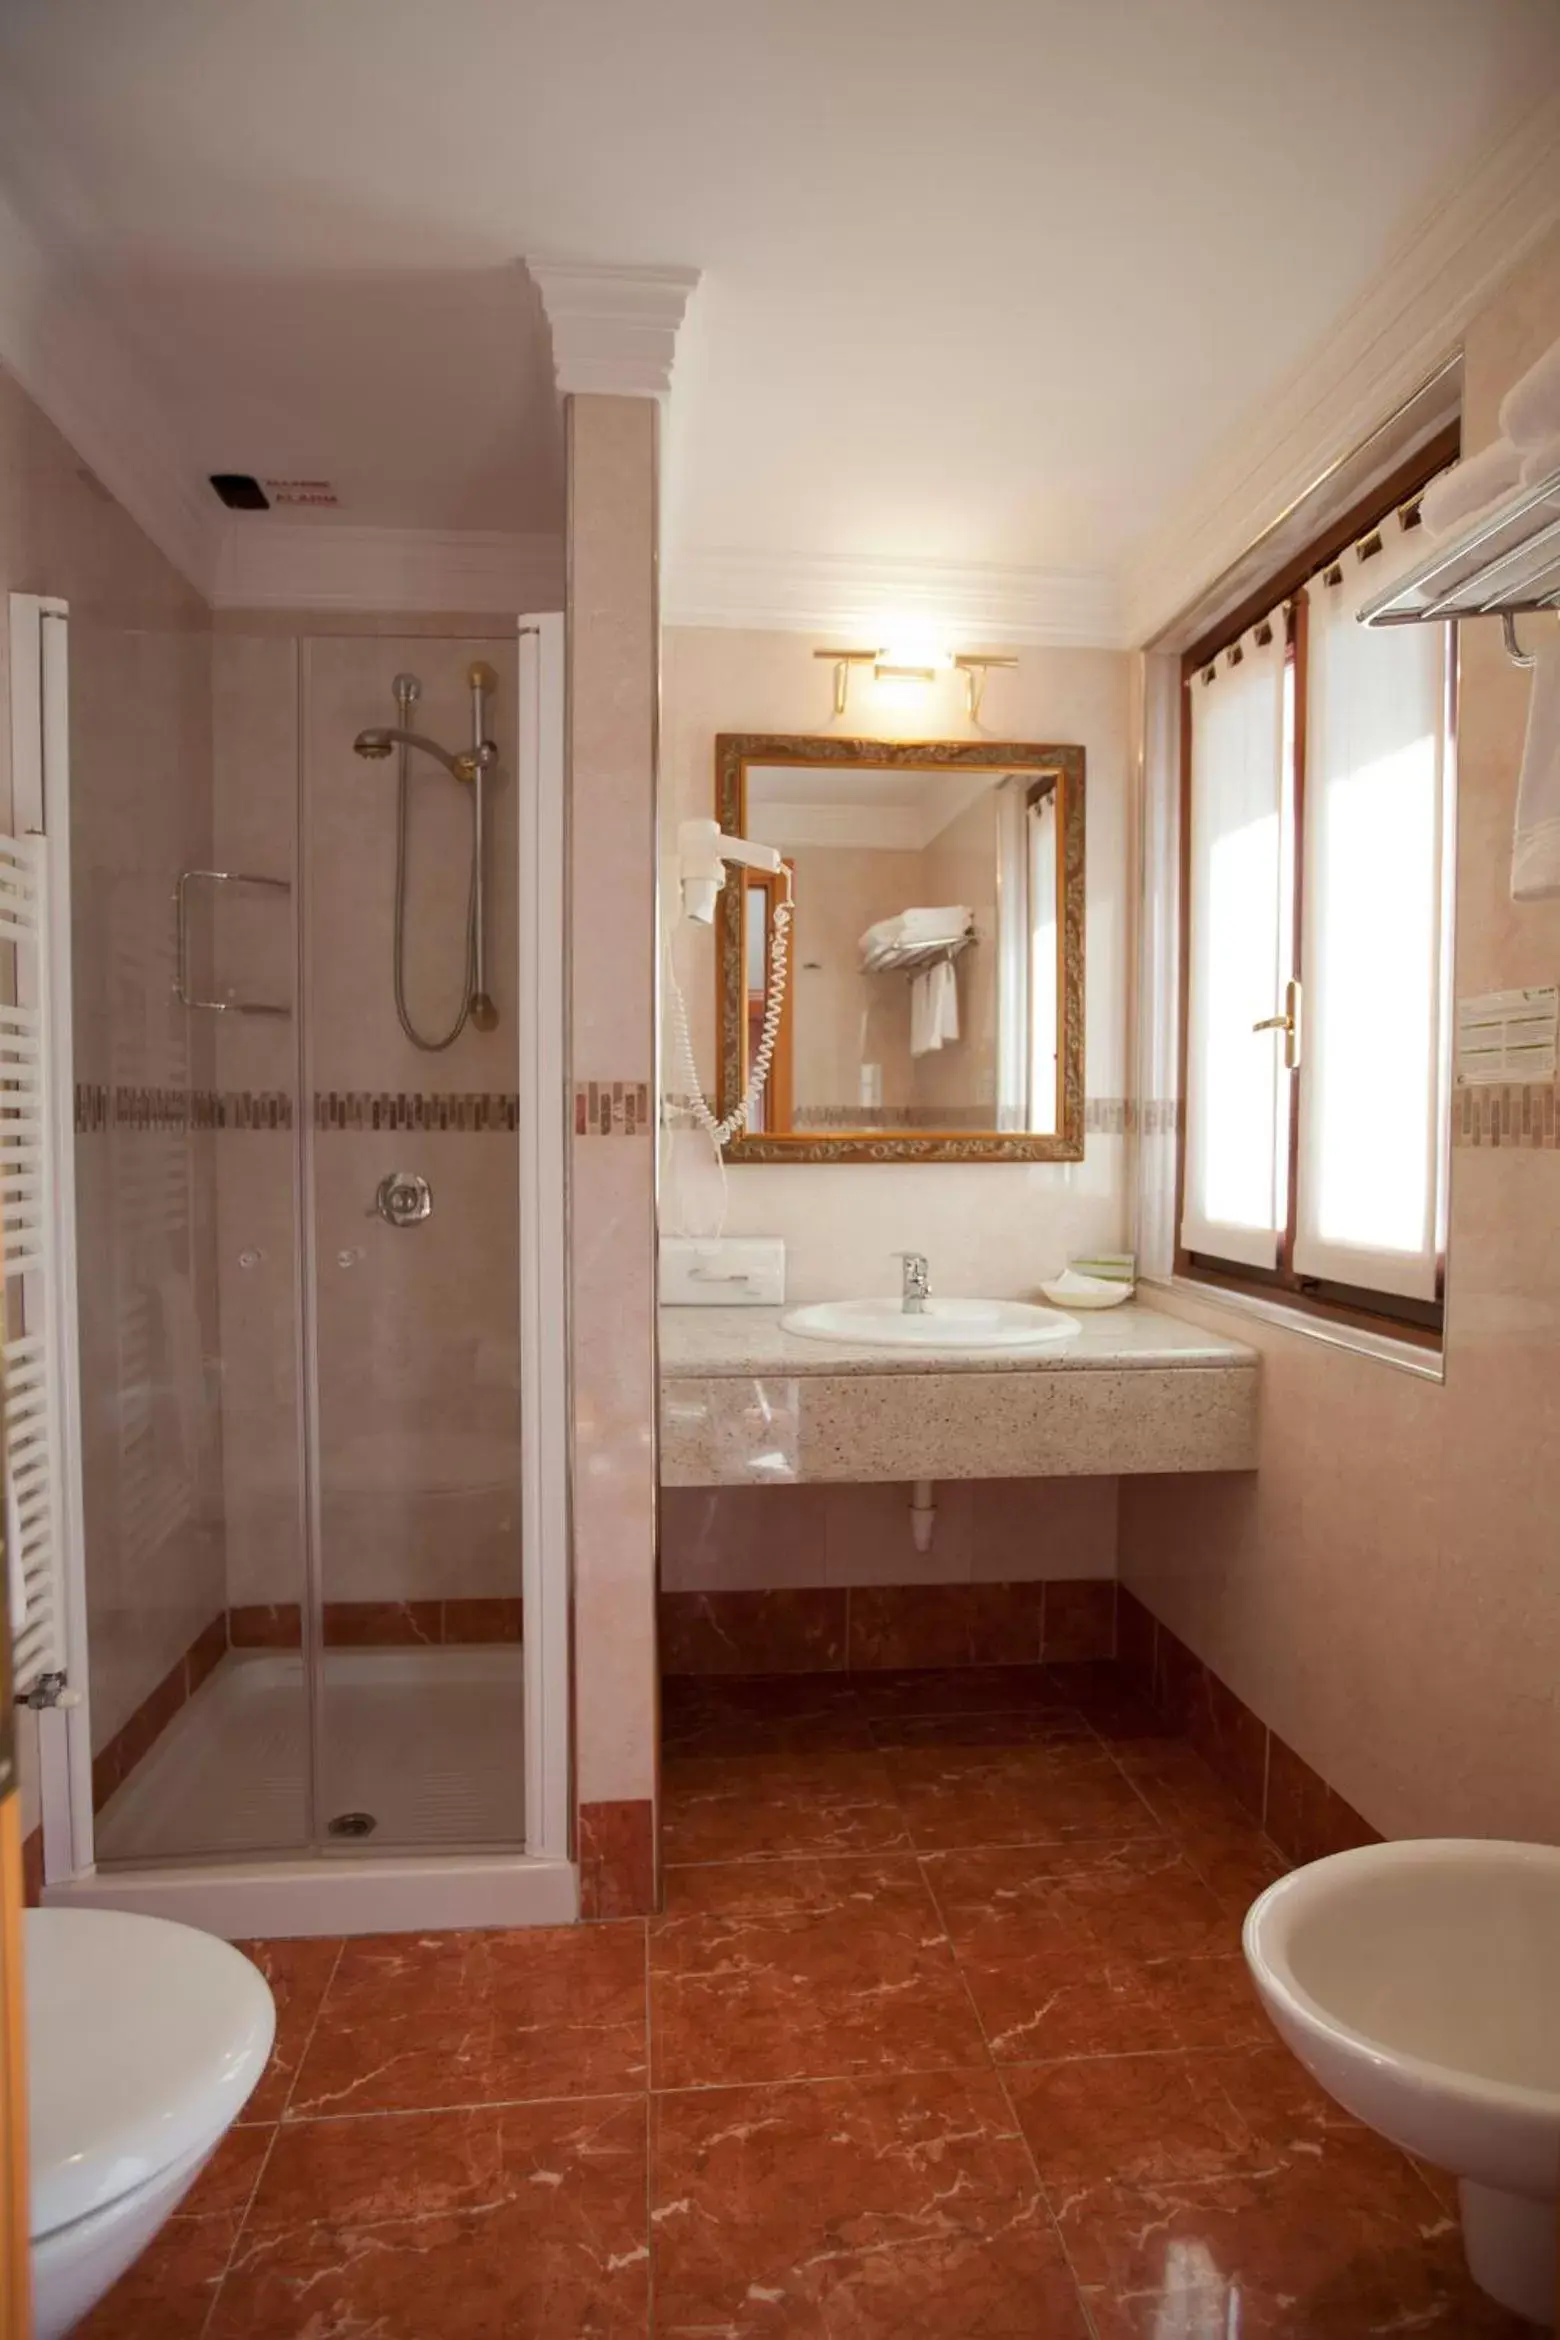 Bathroom in Hotel Ungheria Varese 1946